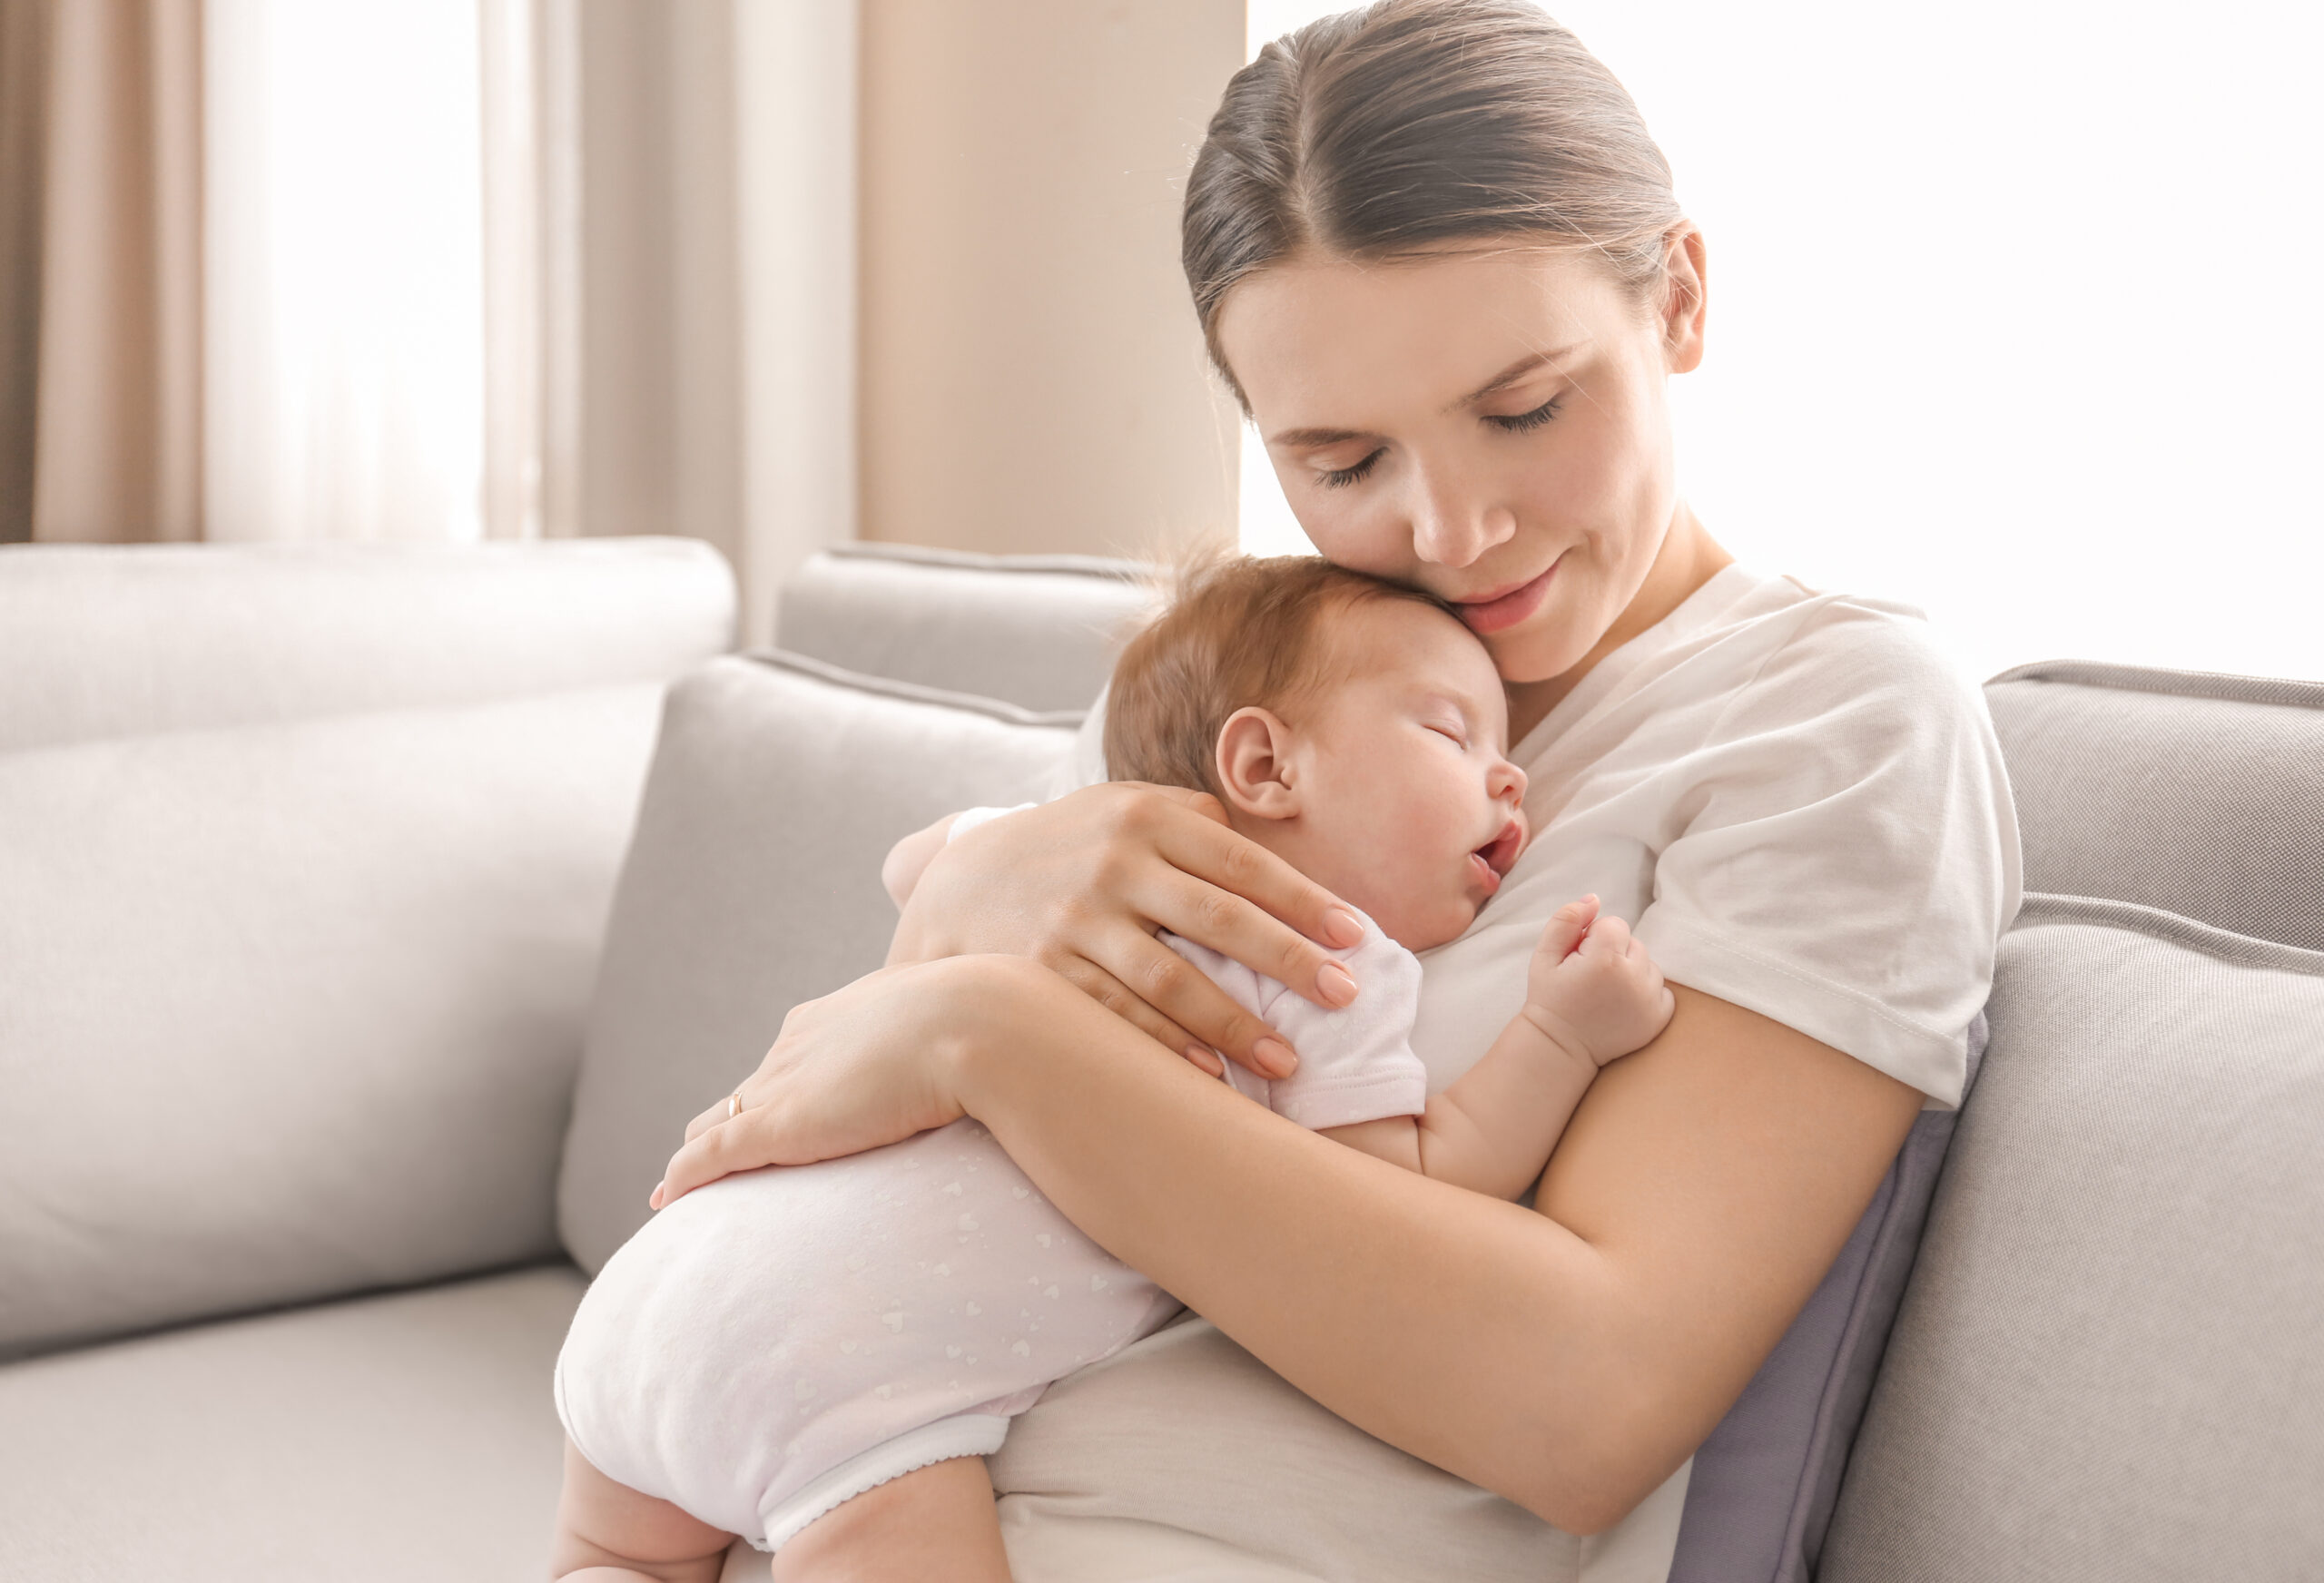 Breastfeeding: diet for a healthy breastfeeding mom